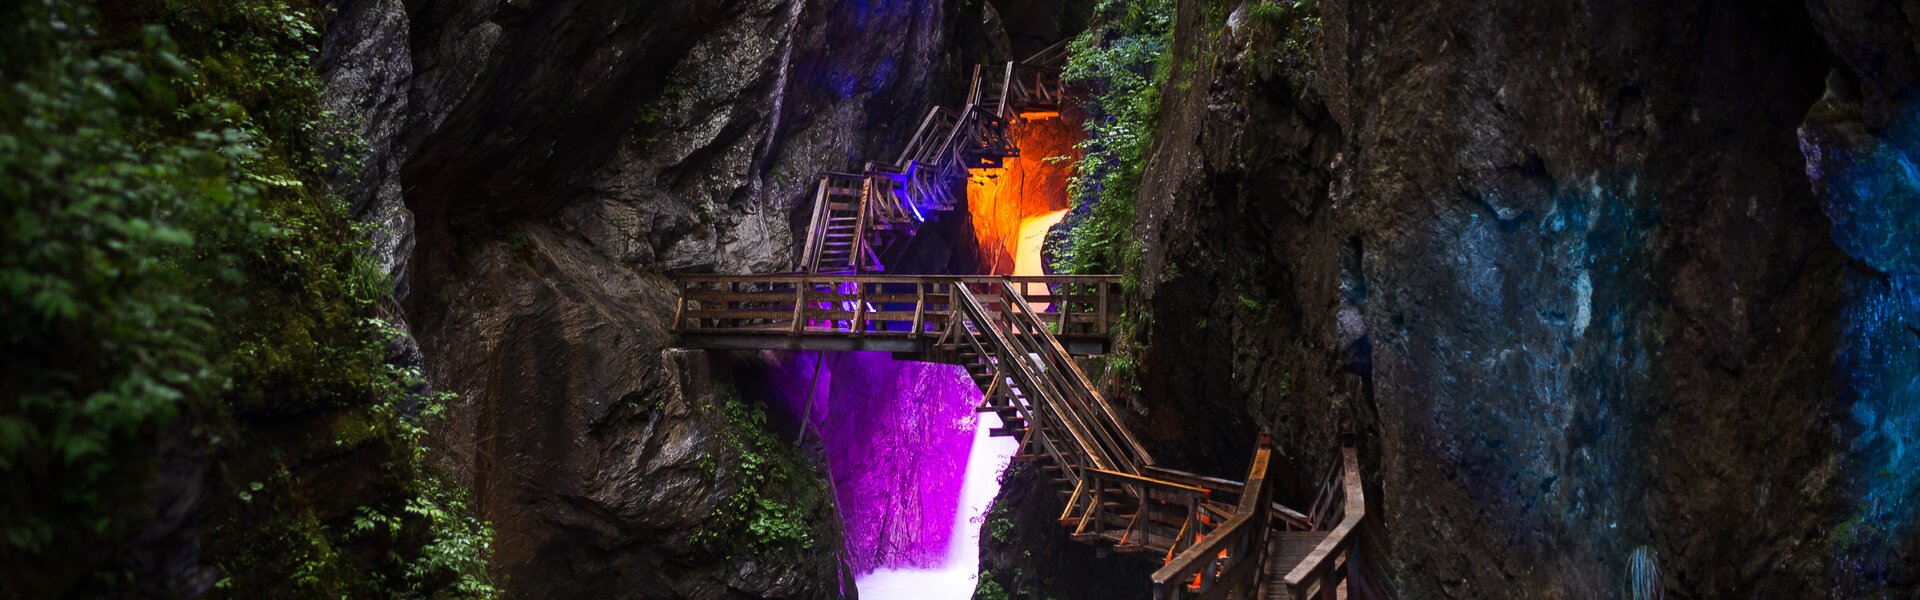 Sigmund Thun Gorge lights